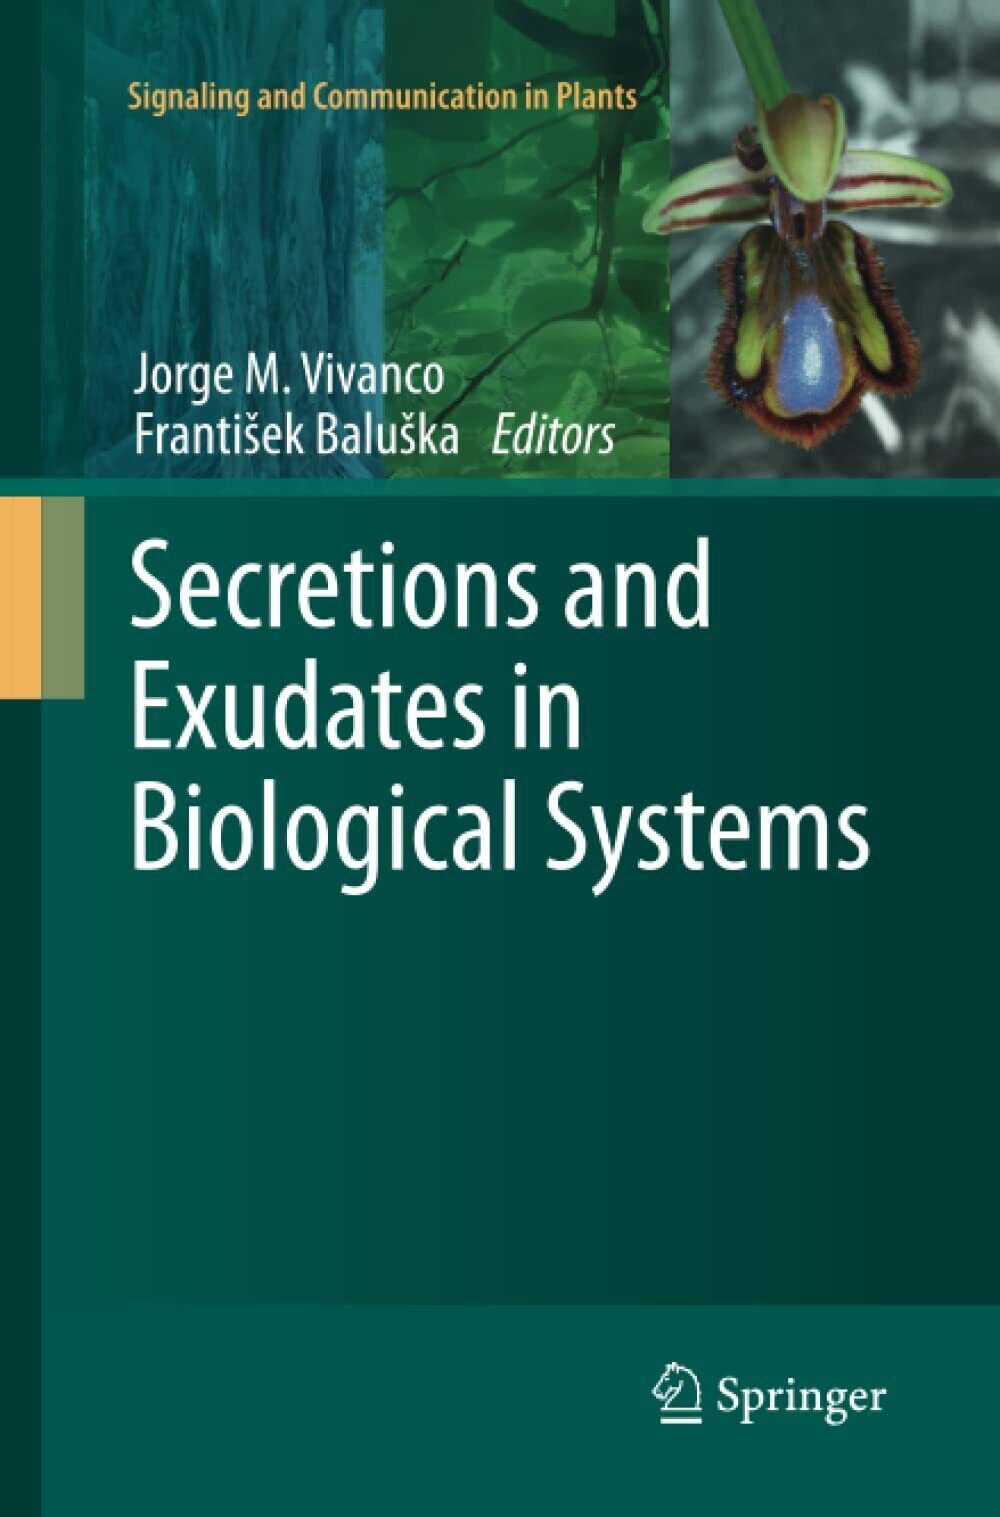 Secretions and Exudates in Biological Systems - Jorge M. Vivanco - Springer,2014